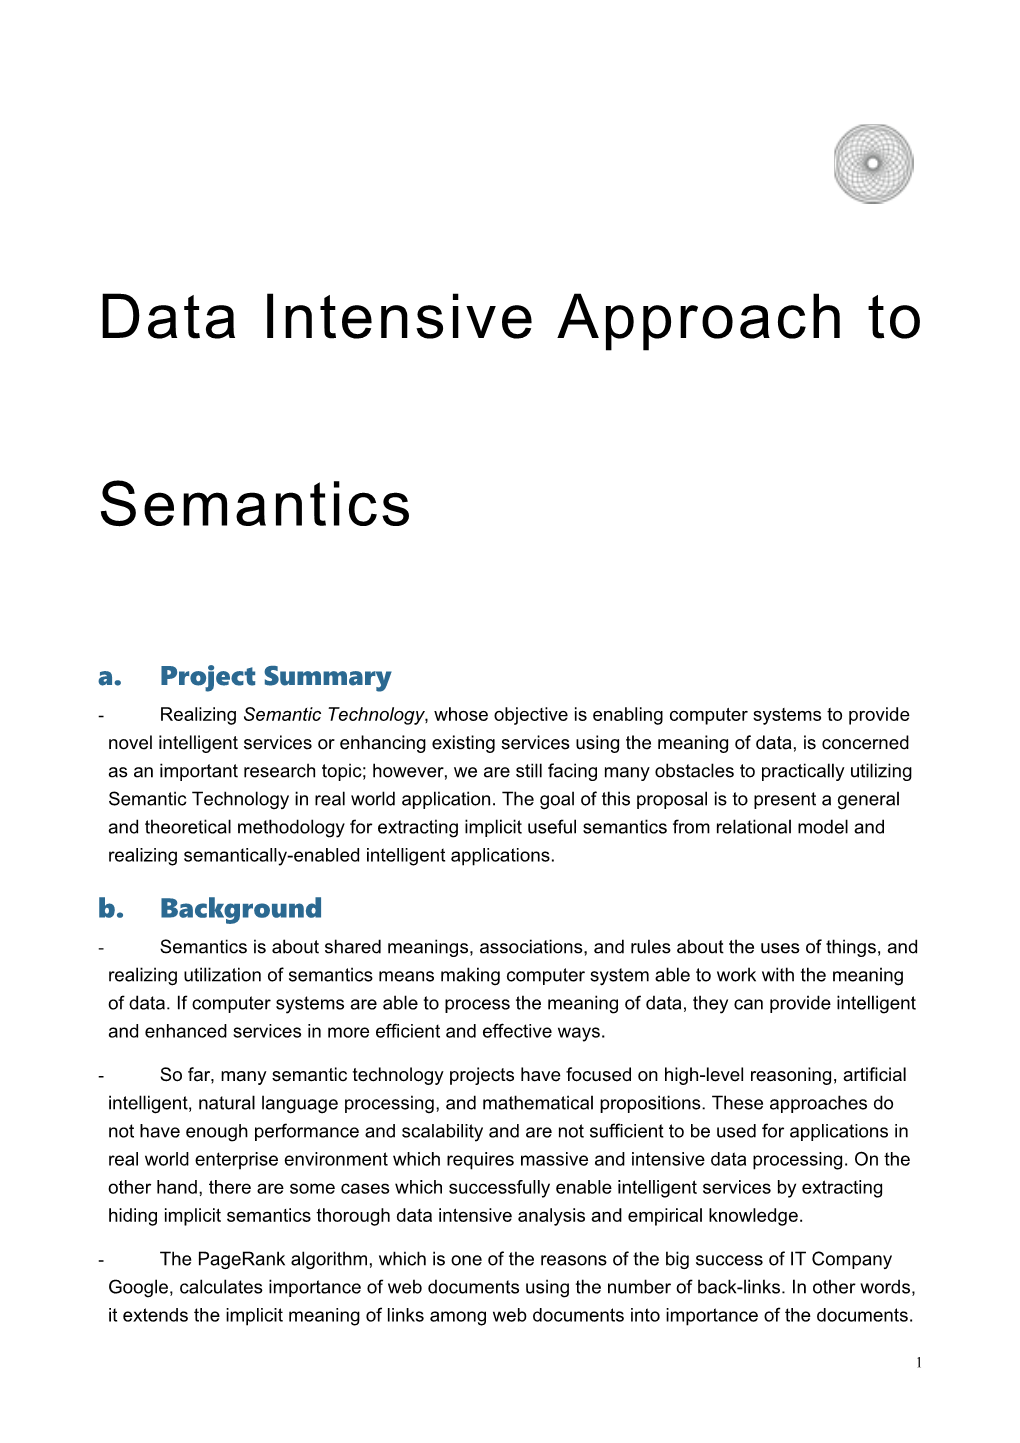 Data Intensive Approach to Semantics